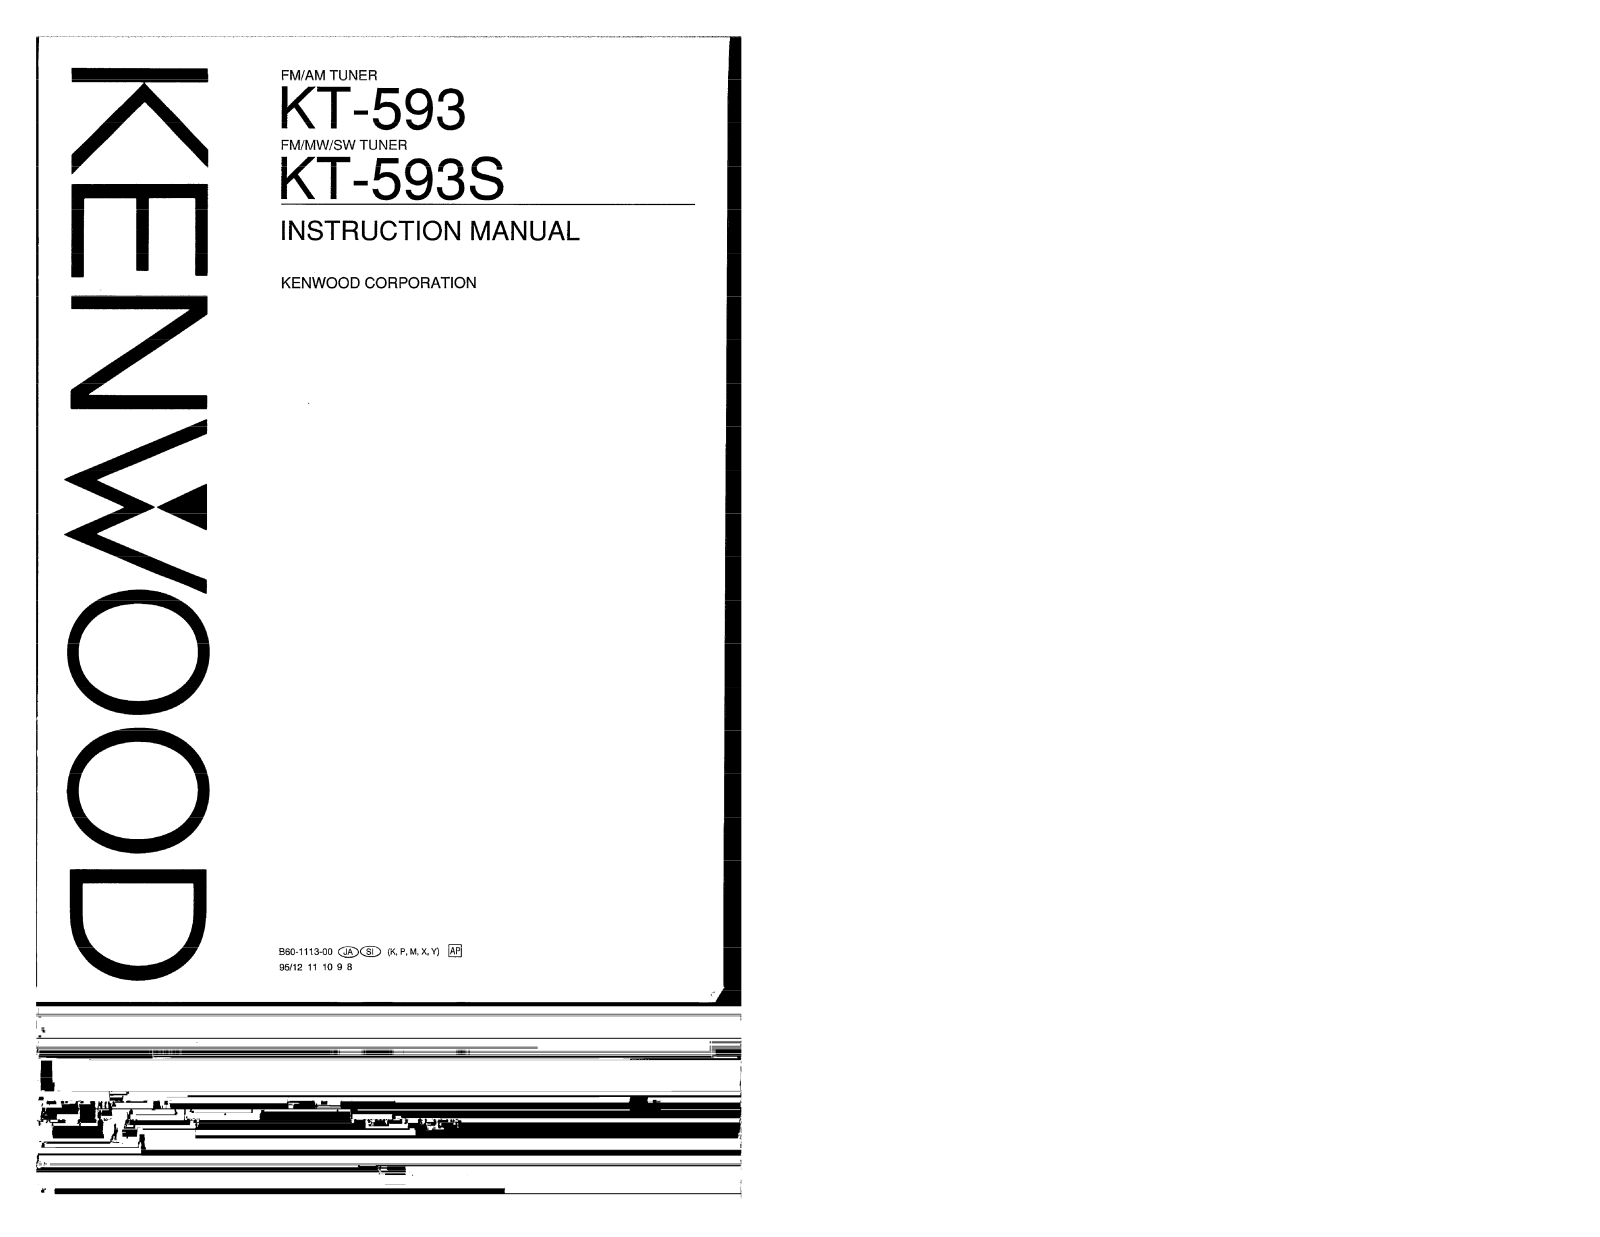 Kenwood KT-593S, KT-593 Owner's Manual